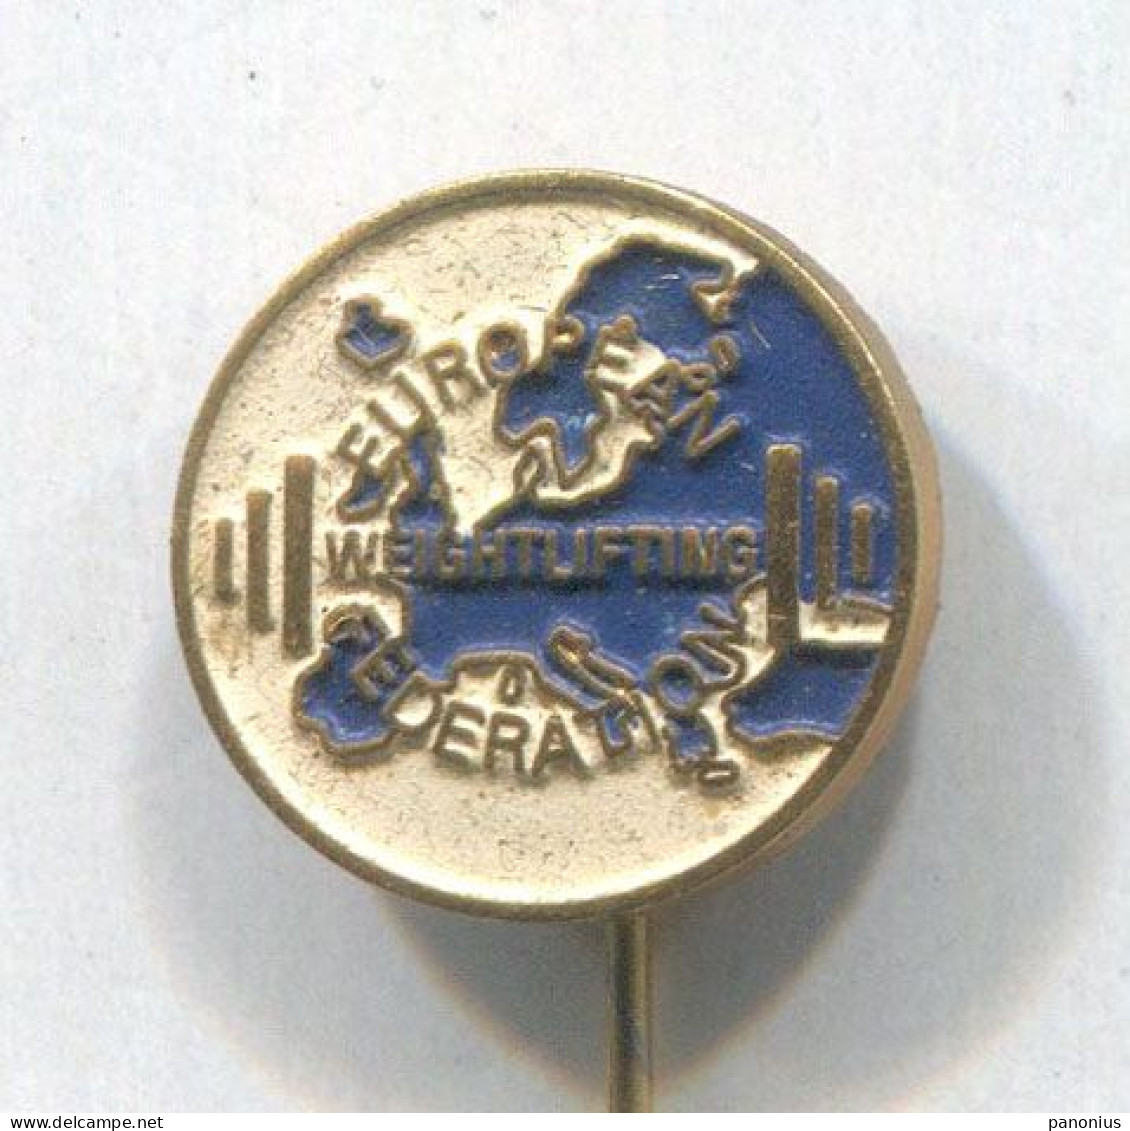 Weightlifting Gewichtheben - European Federation Association, Vintage Pin, Badge, Abzeichen - Gewichtheben